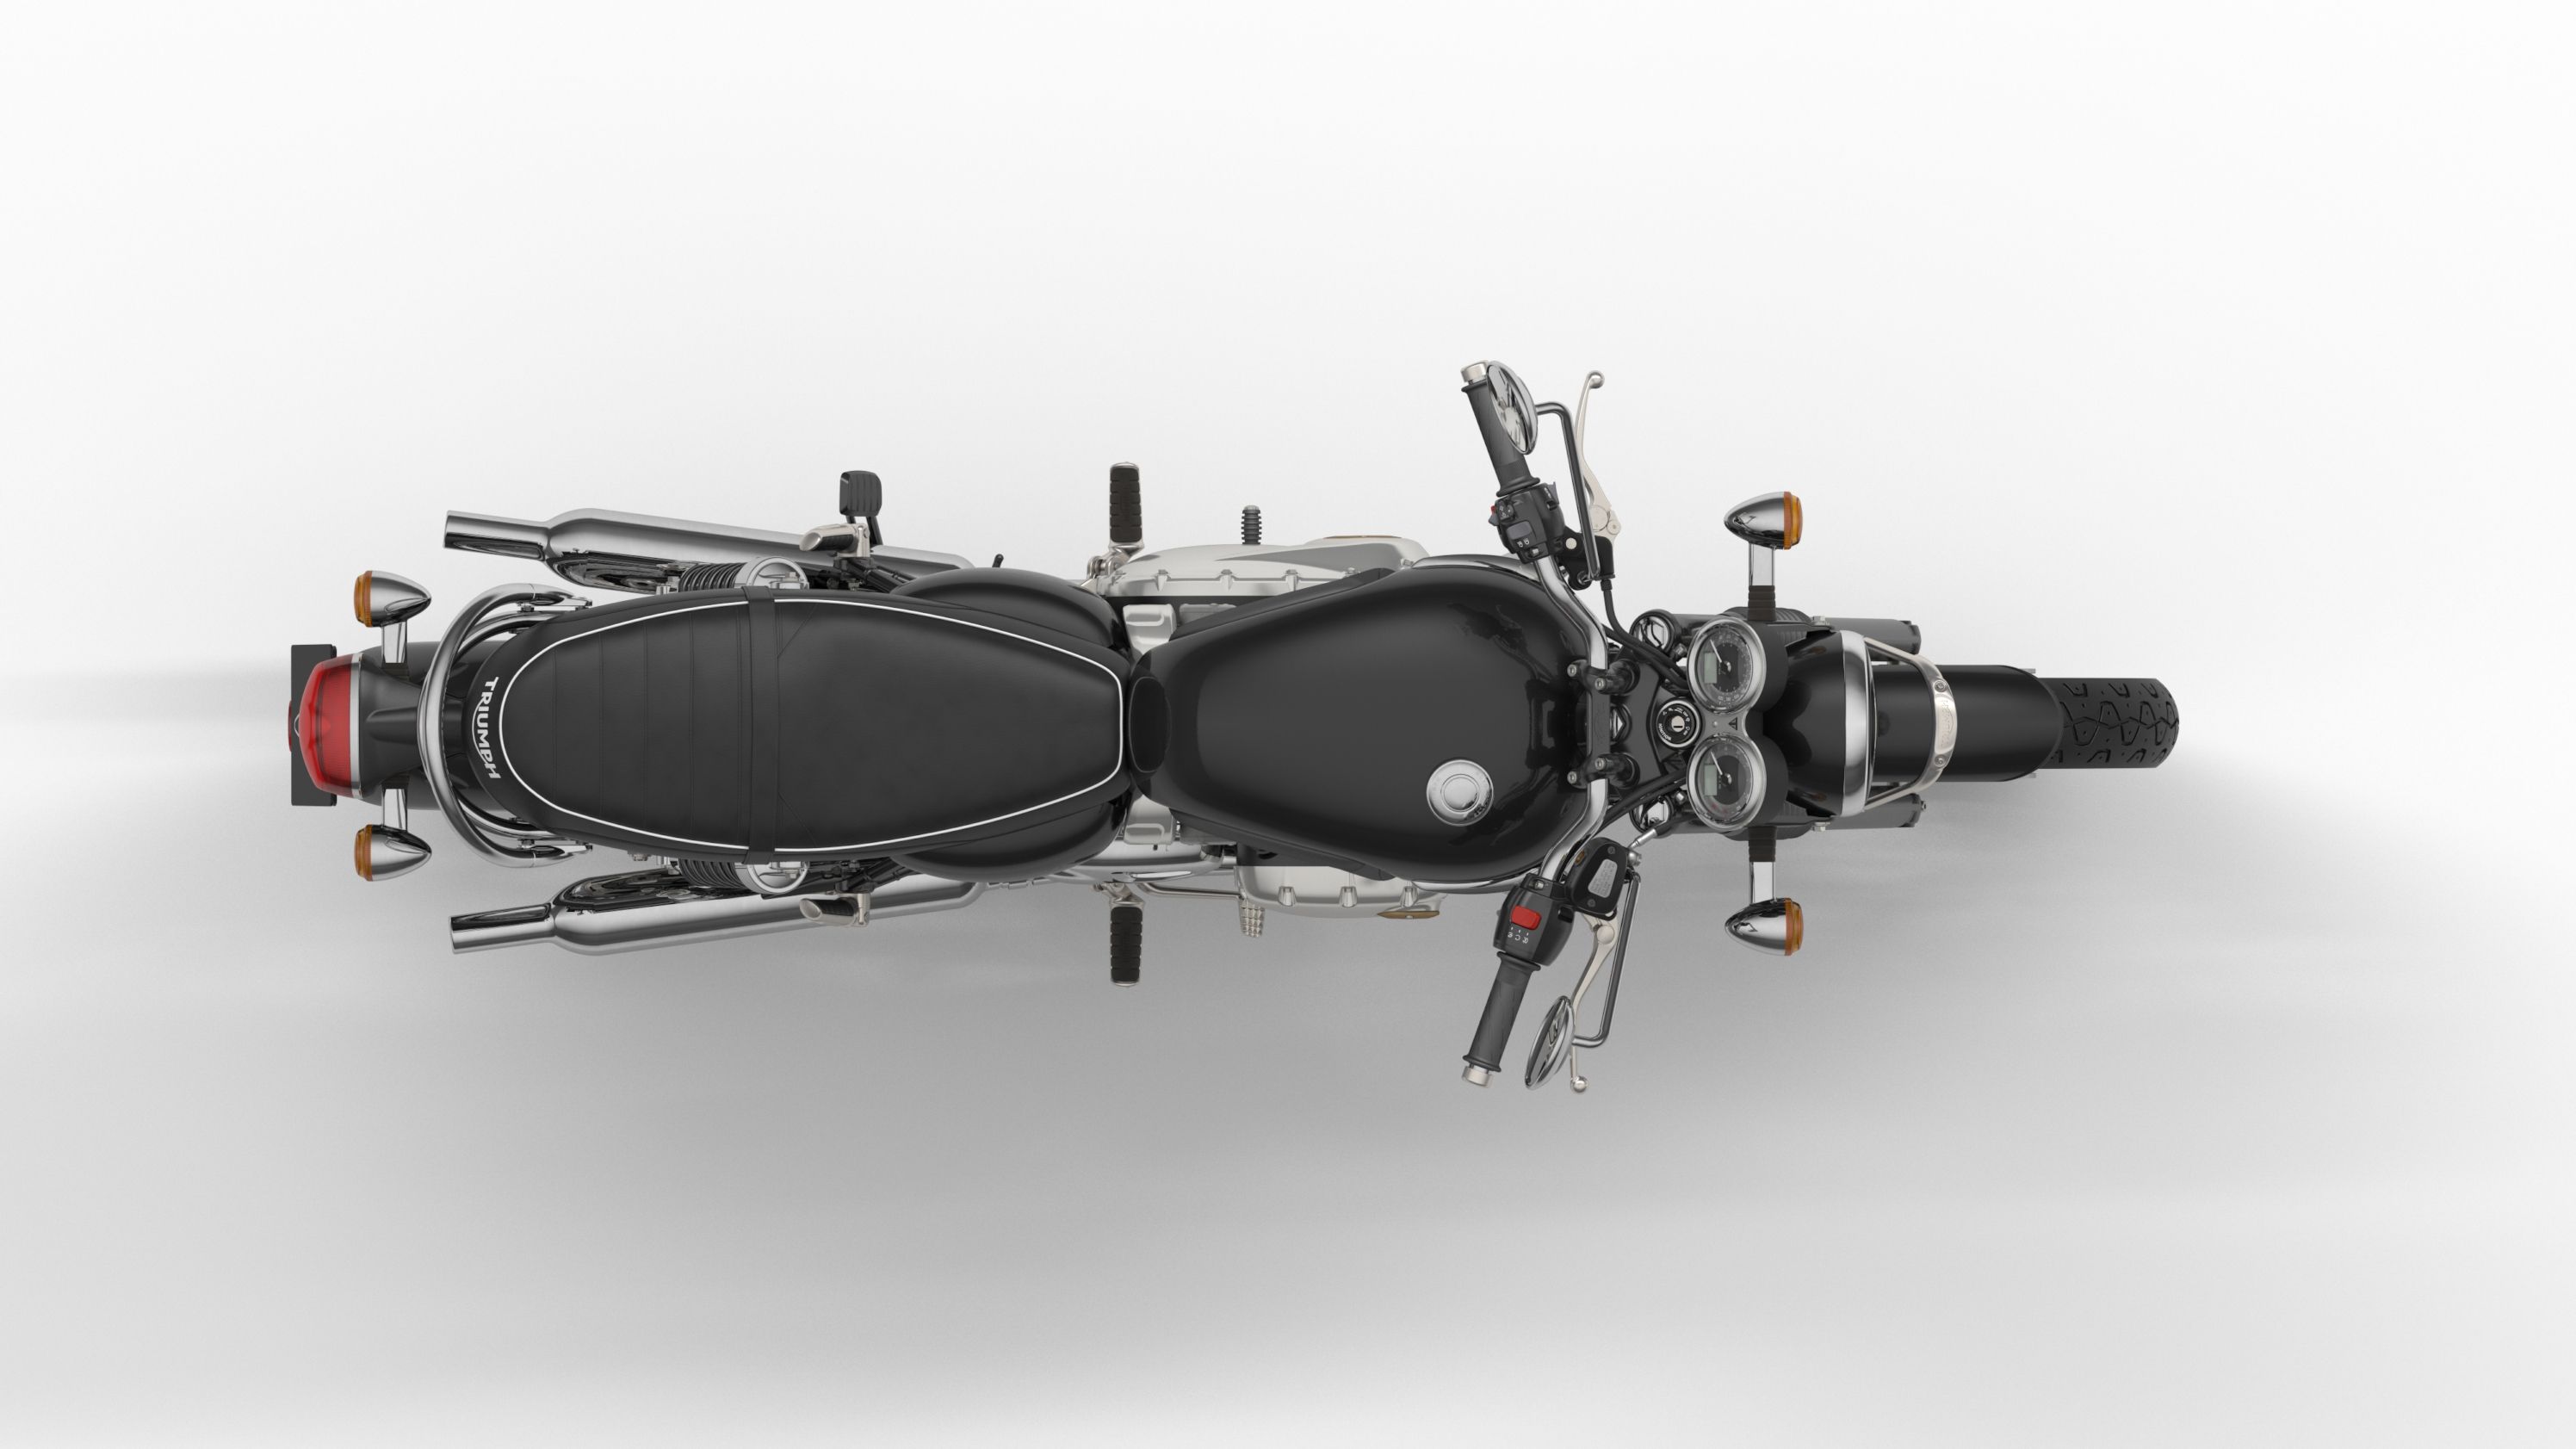 2016 - 2020 Triumph Bonneville T120 / T120 Black